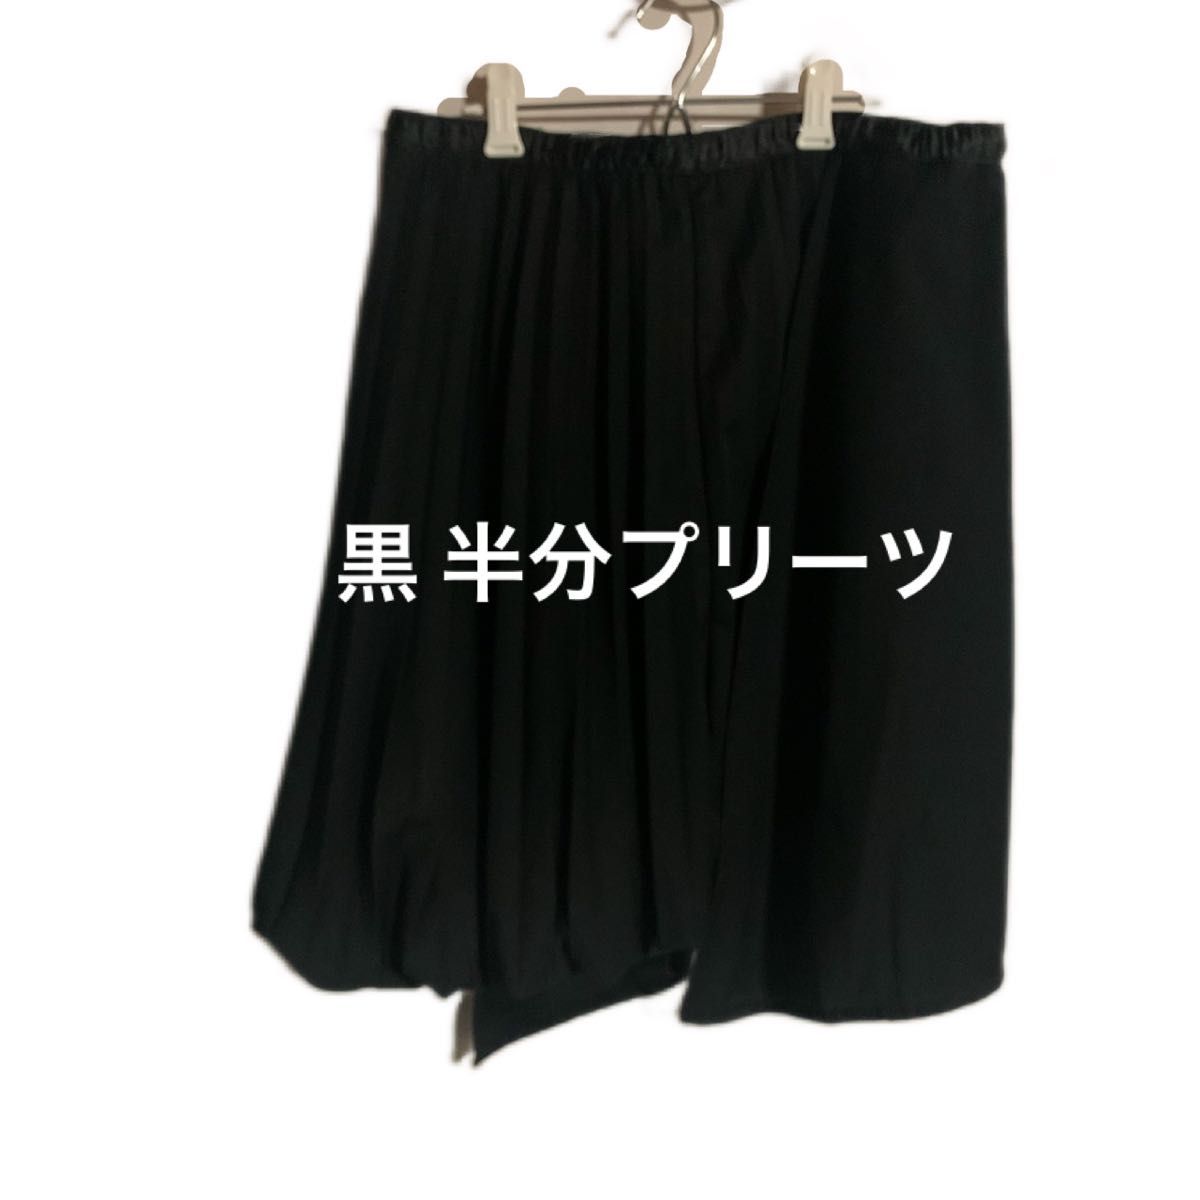 黒 個性的なスカート  プリーツスカート 巻きスカートに見えるデザイン